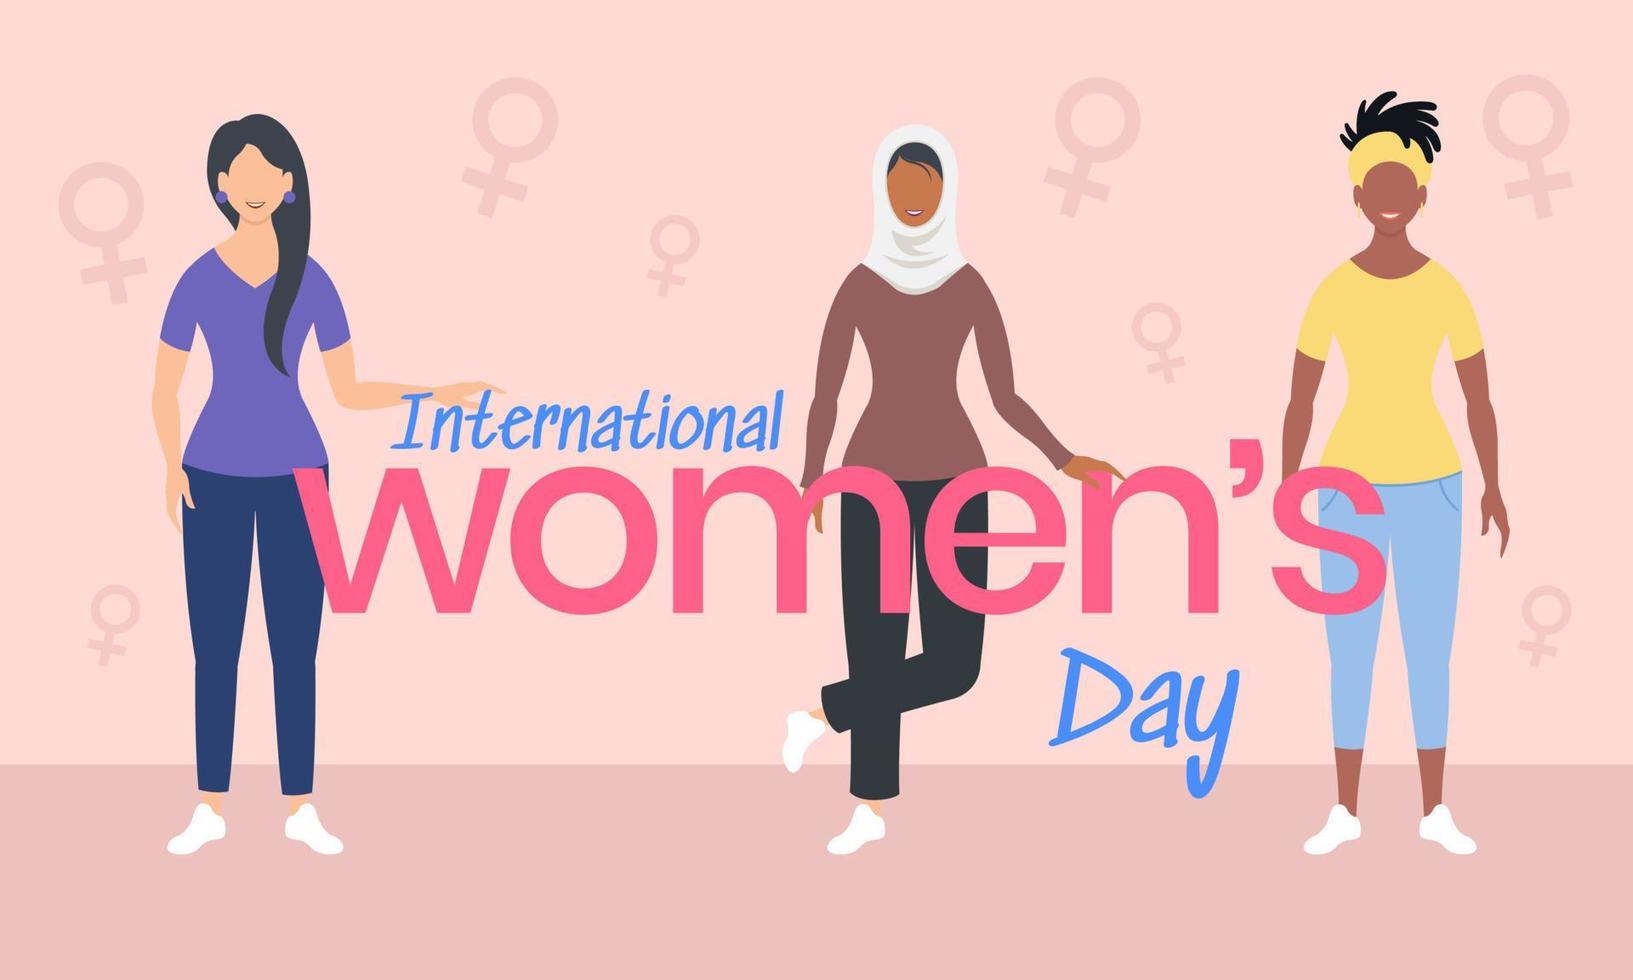 muçulmana, africana, mulher negra celebra, mulheres de diferentes idades e culturas juntas no dia internacional da mulher. vetor